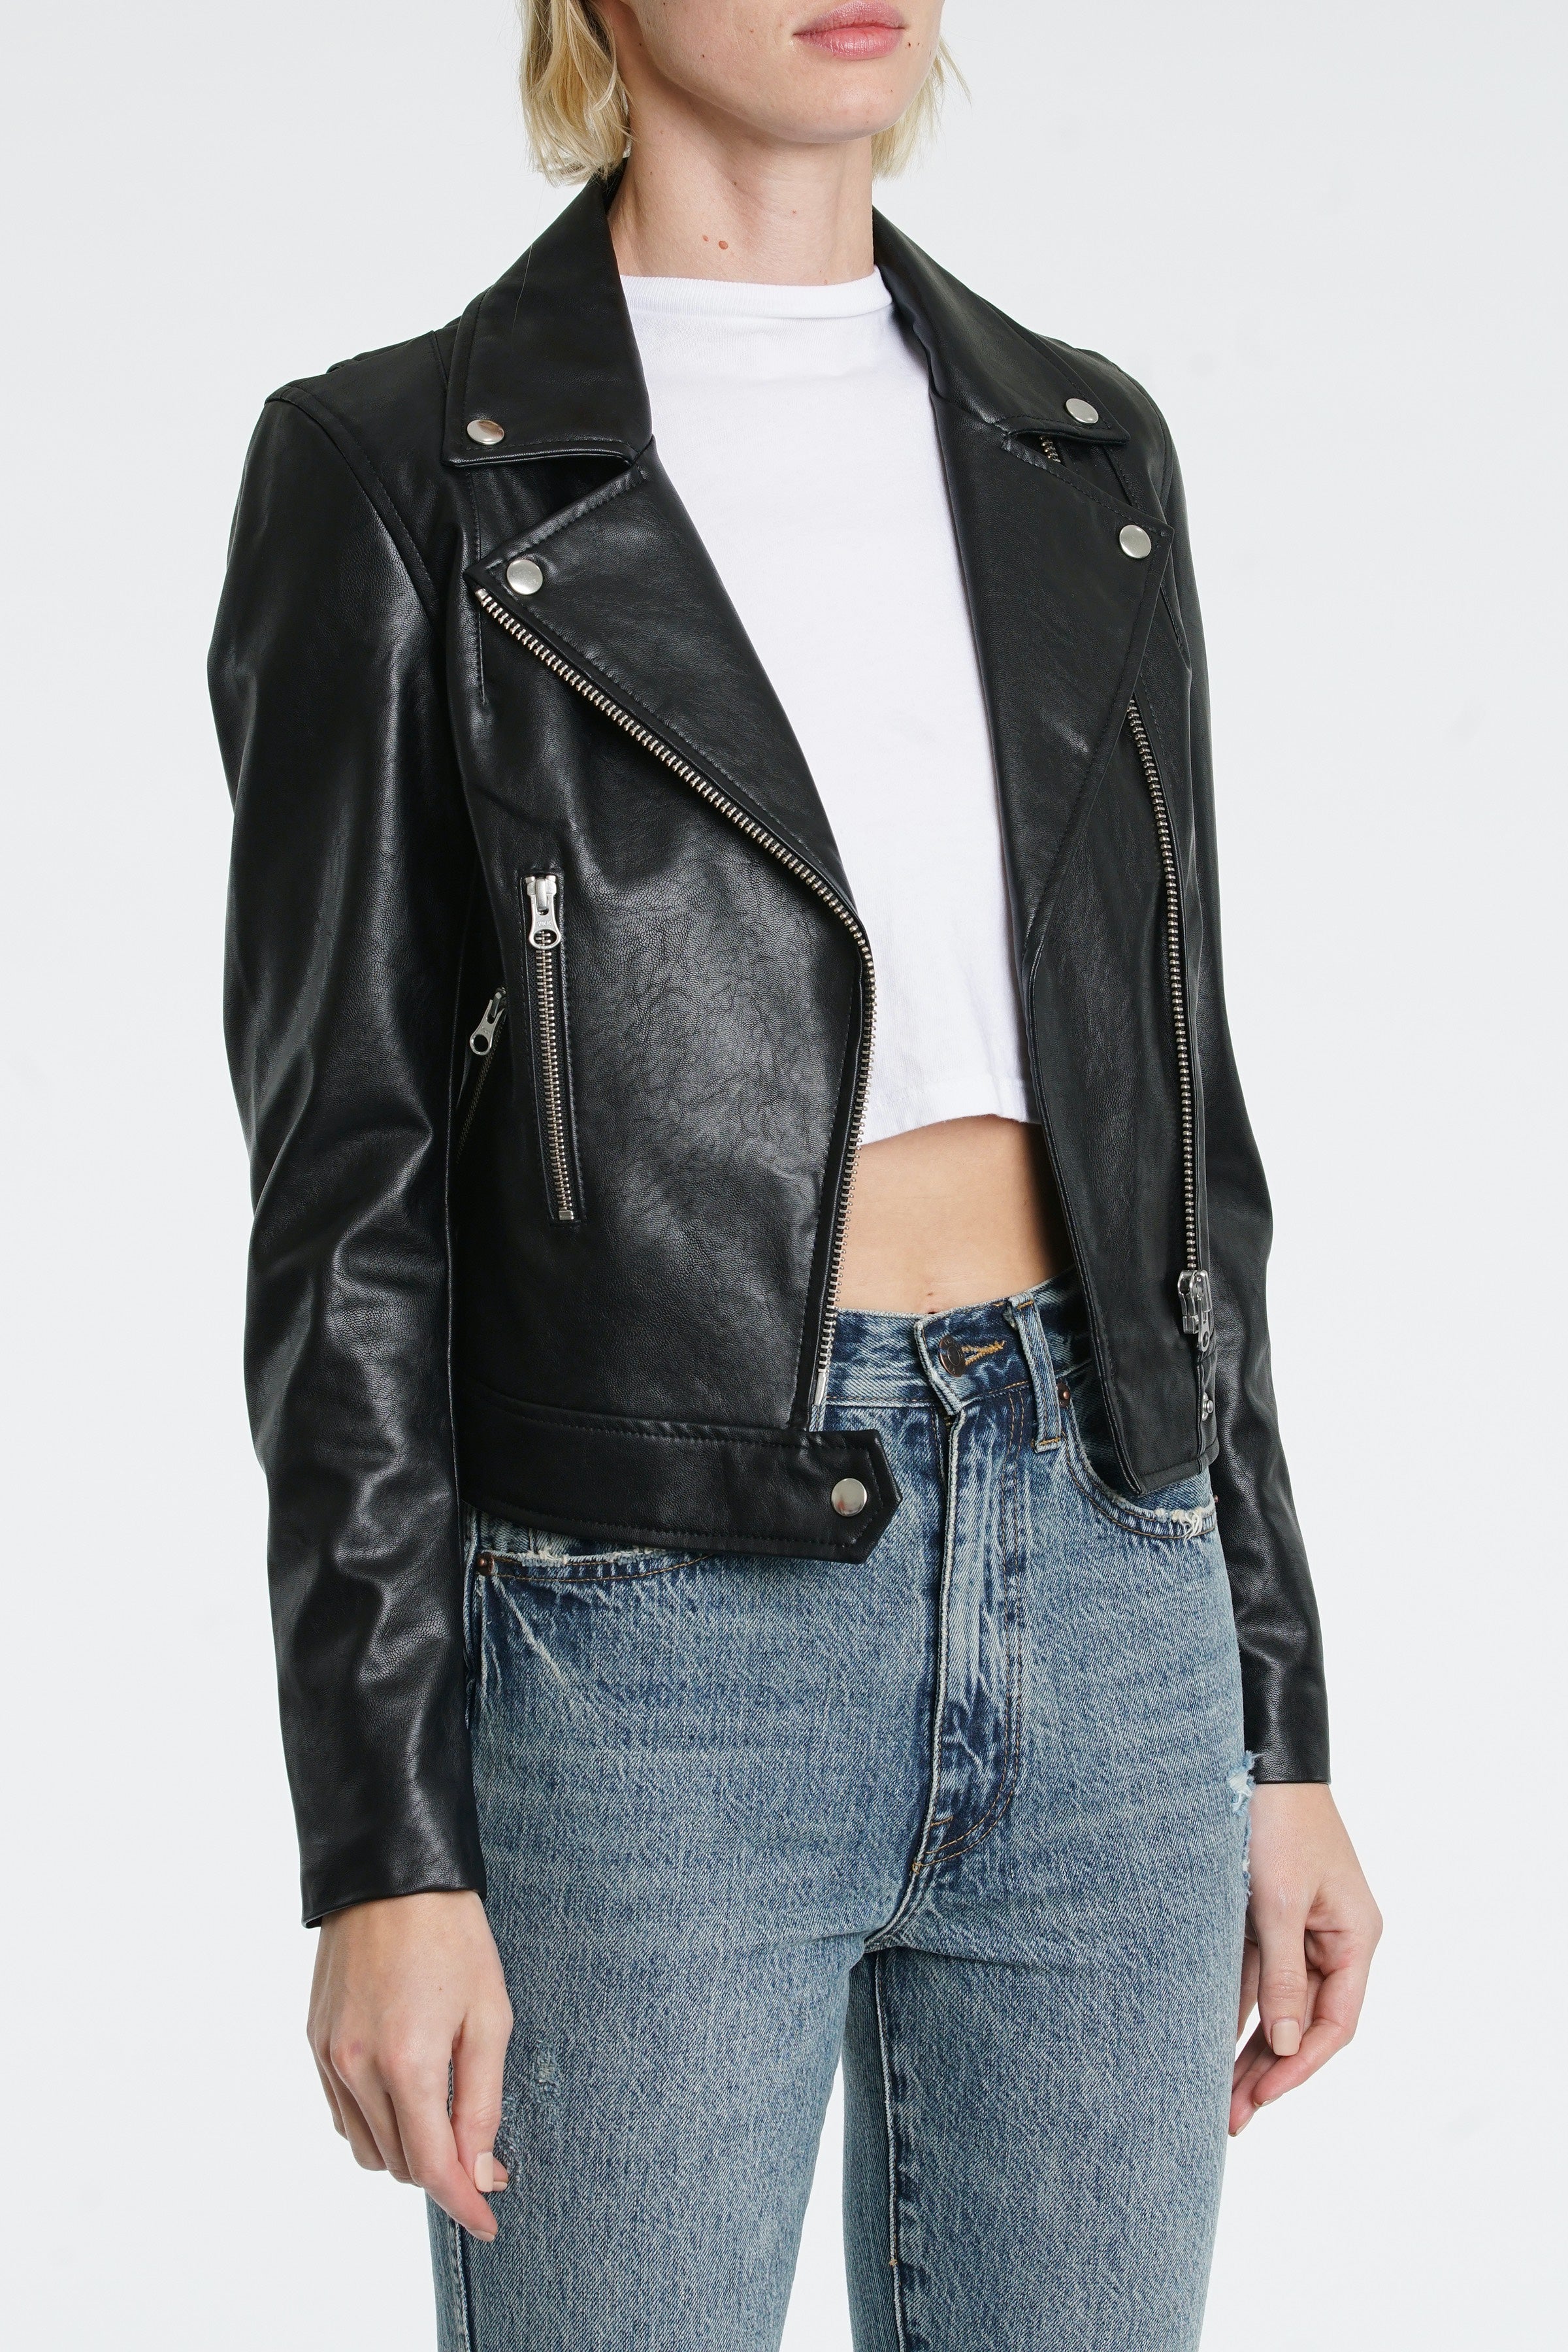 Odette Leather Jacket